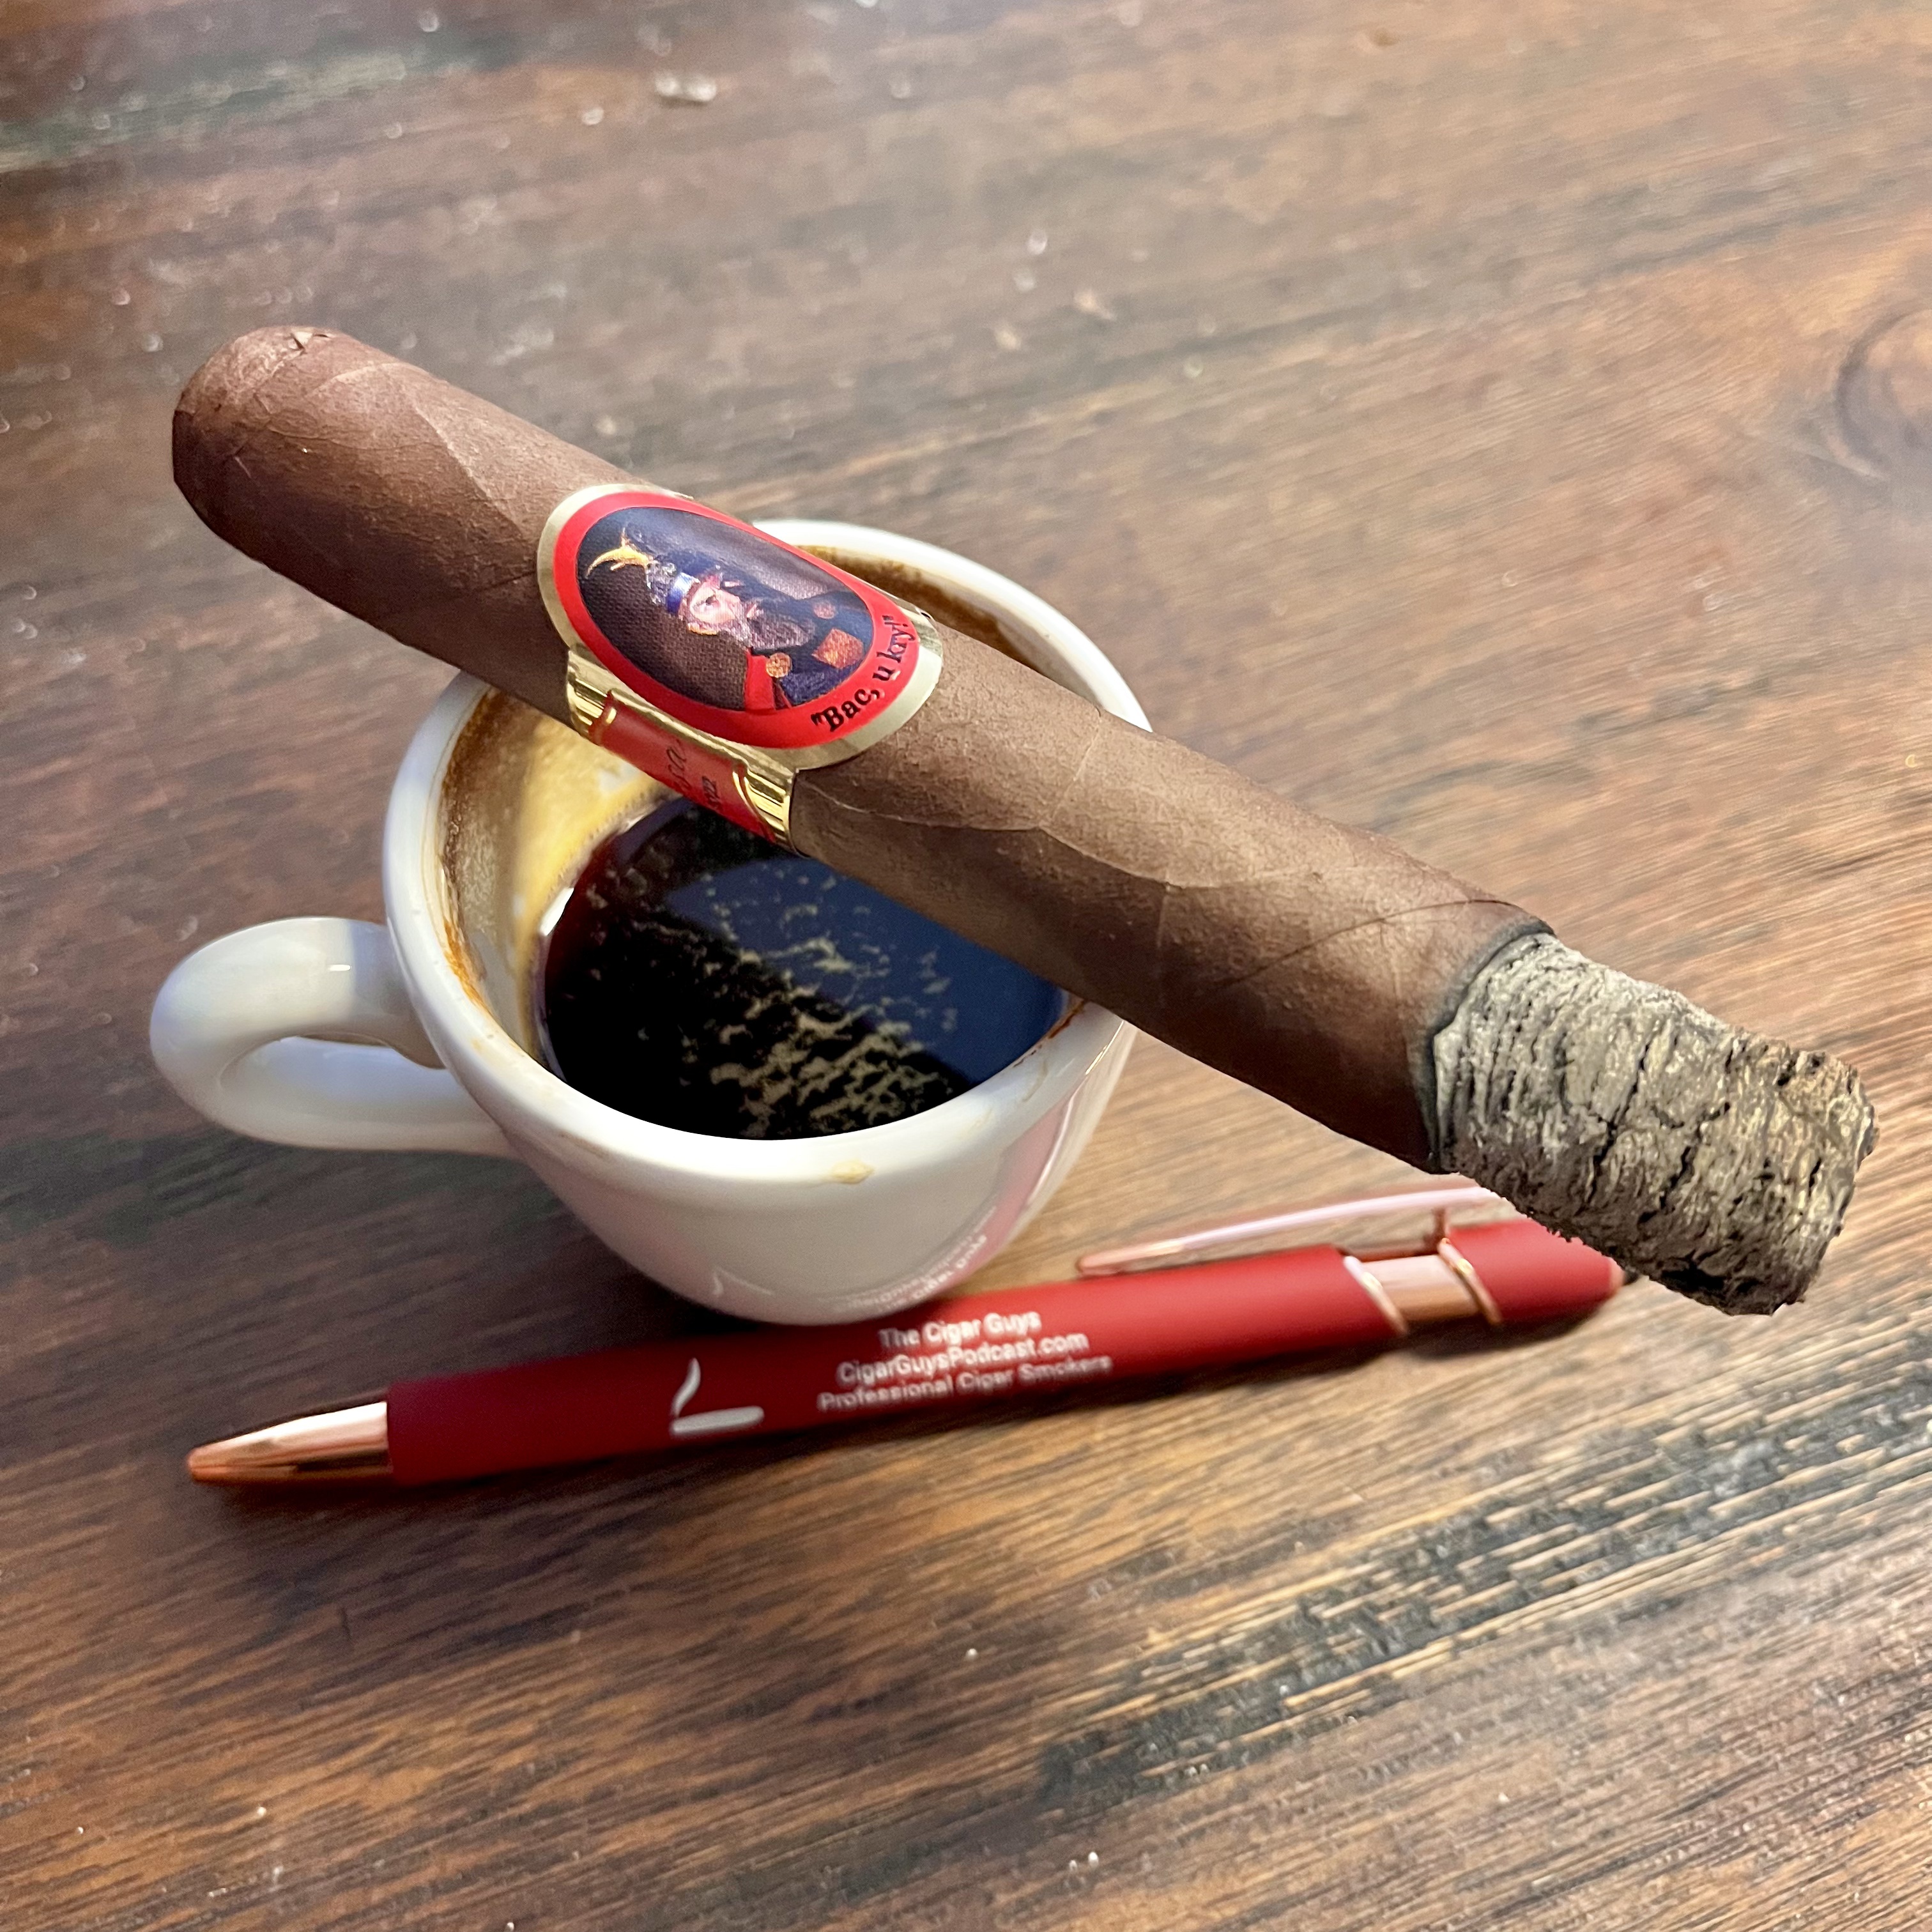 Besa Cigar with an espresso